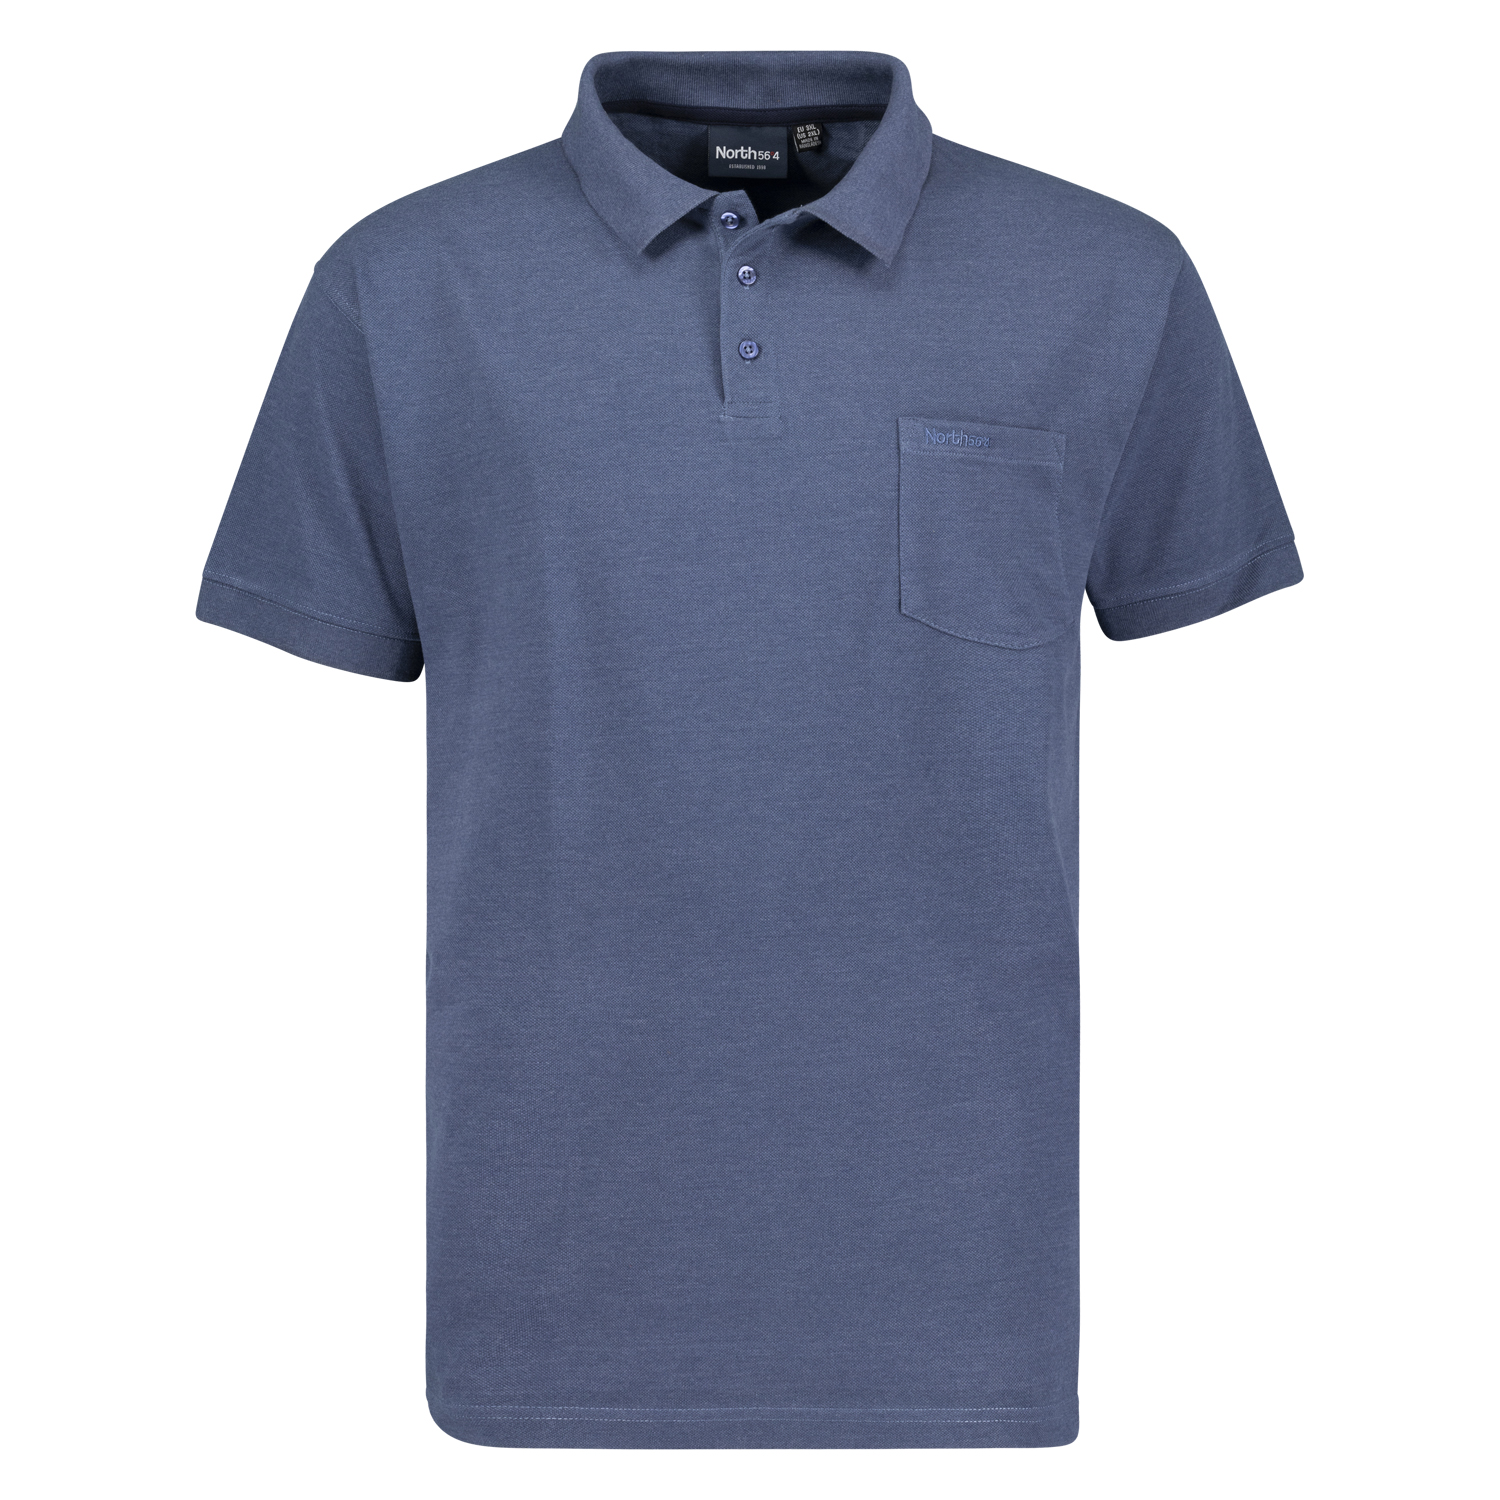 Blaues Poloshirt Pique für Herren in großen Größen 3XL - 8XL Greyes/North 56°4